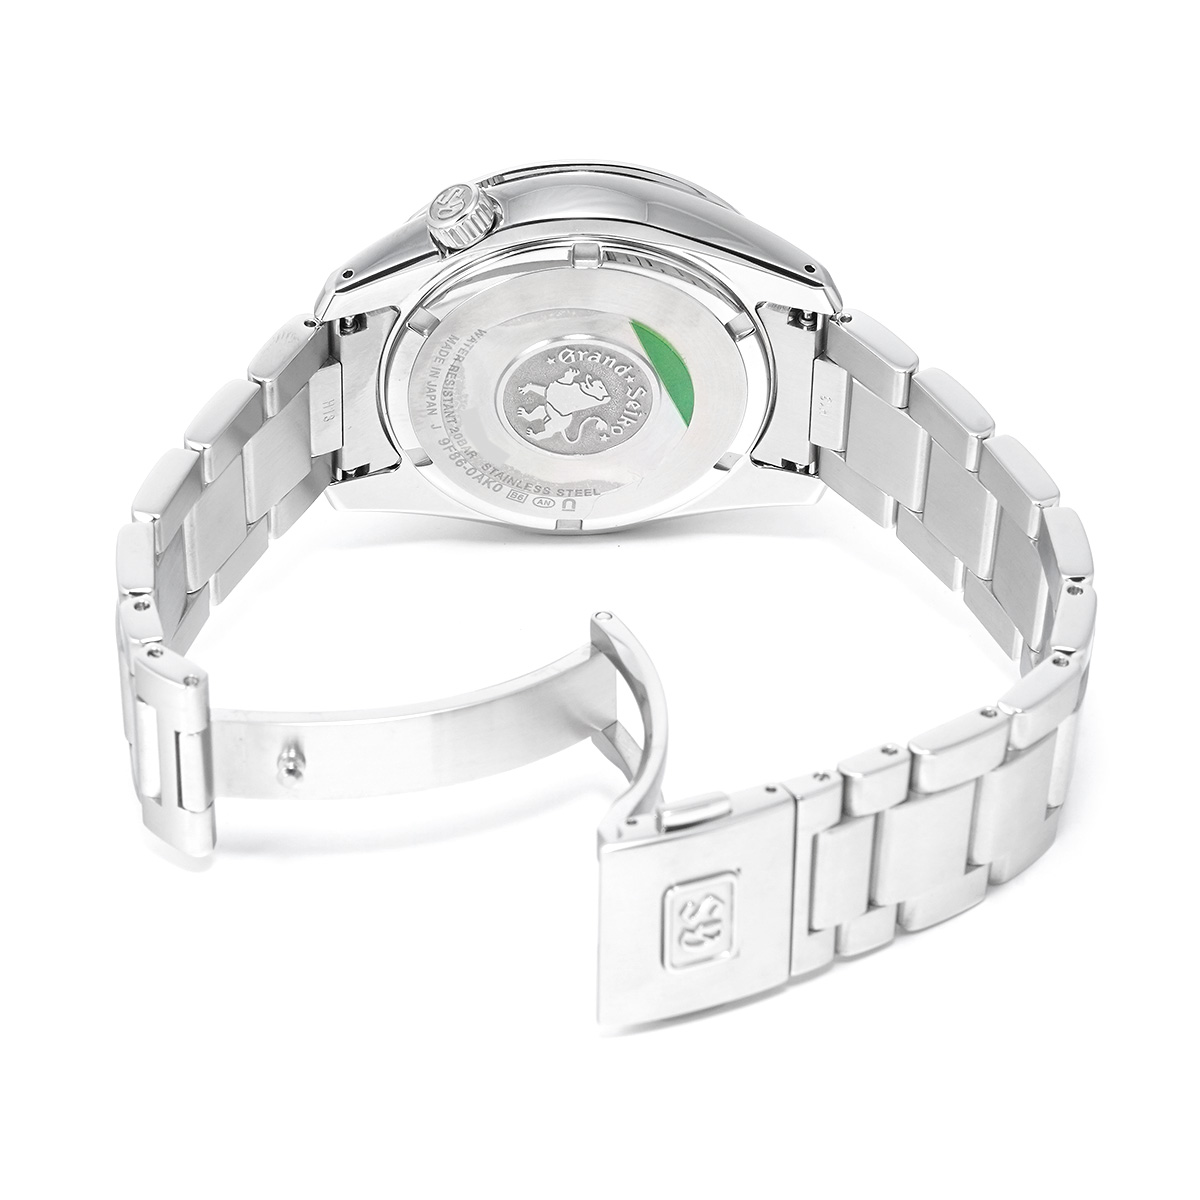 グランド セイコー GRAND SEIKO 腕時計 メンズ SBGN029 スポーツコレクション アクティブ Sport Collection Active クオーツ（9F86） ネイビーxシルバー アナログ表示